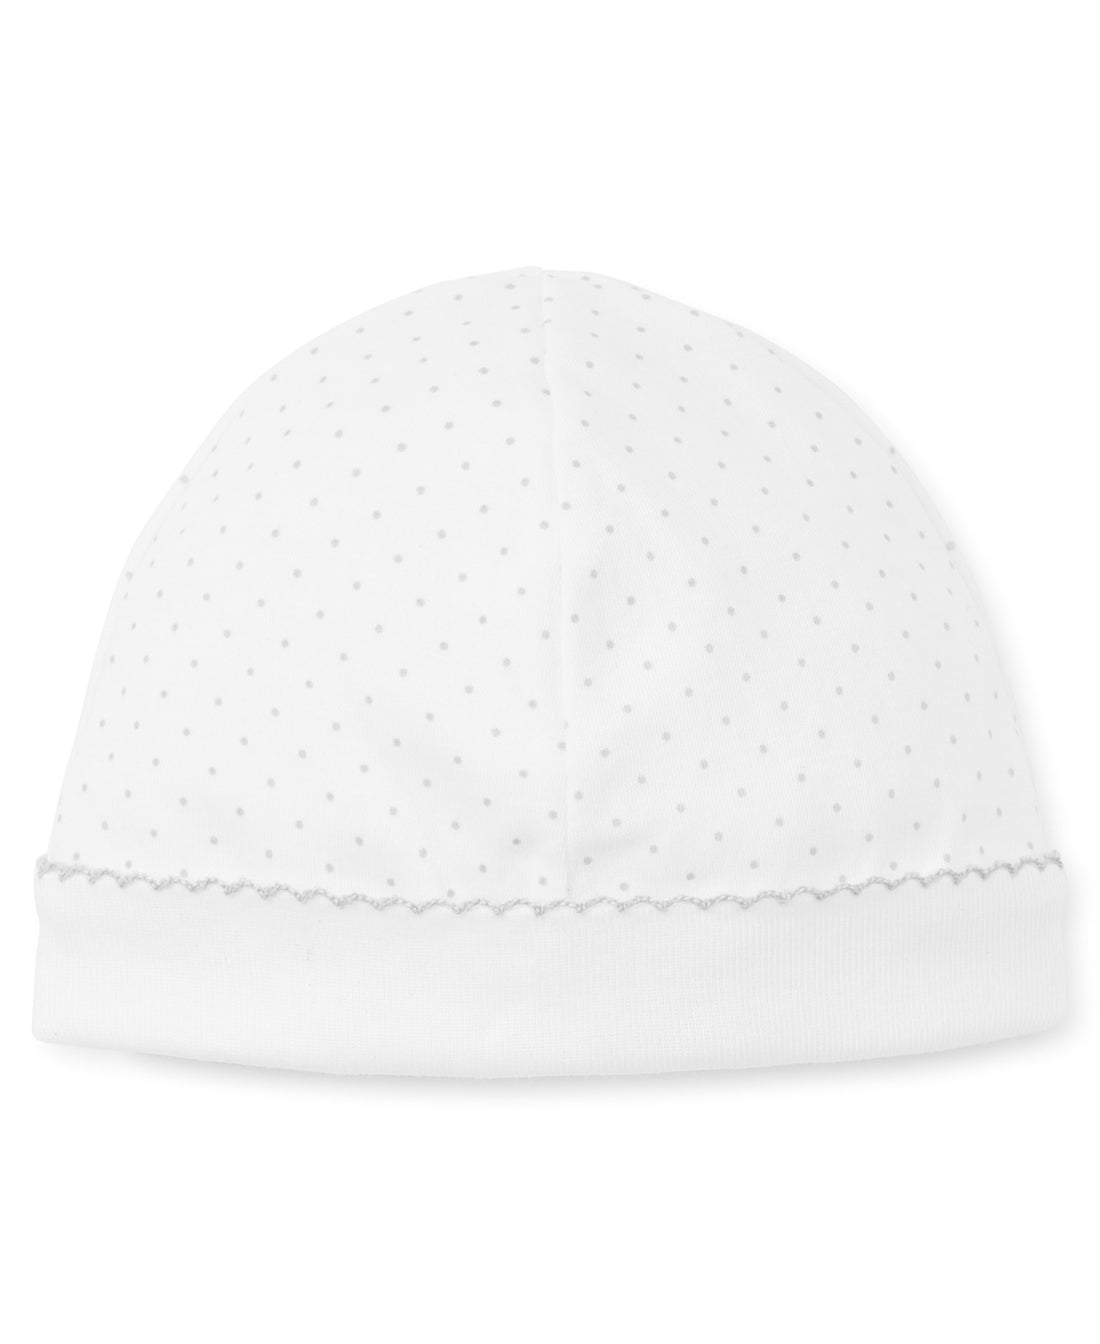 dots print hat white silver